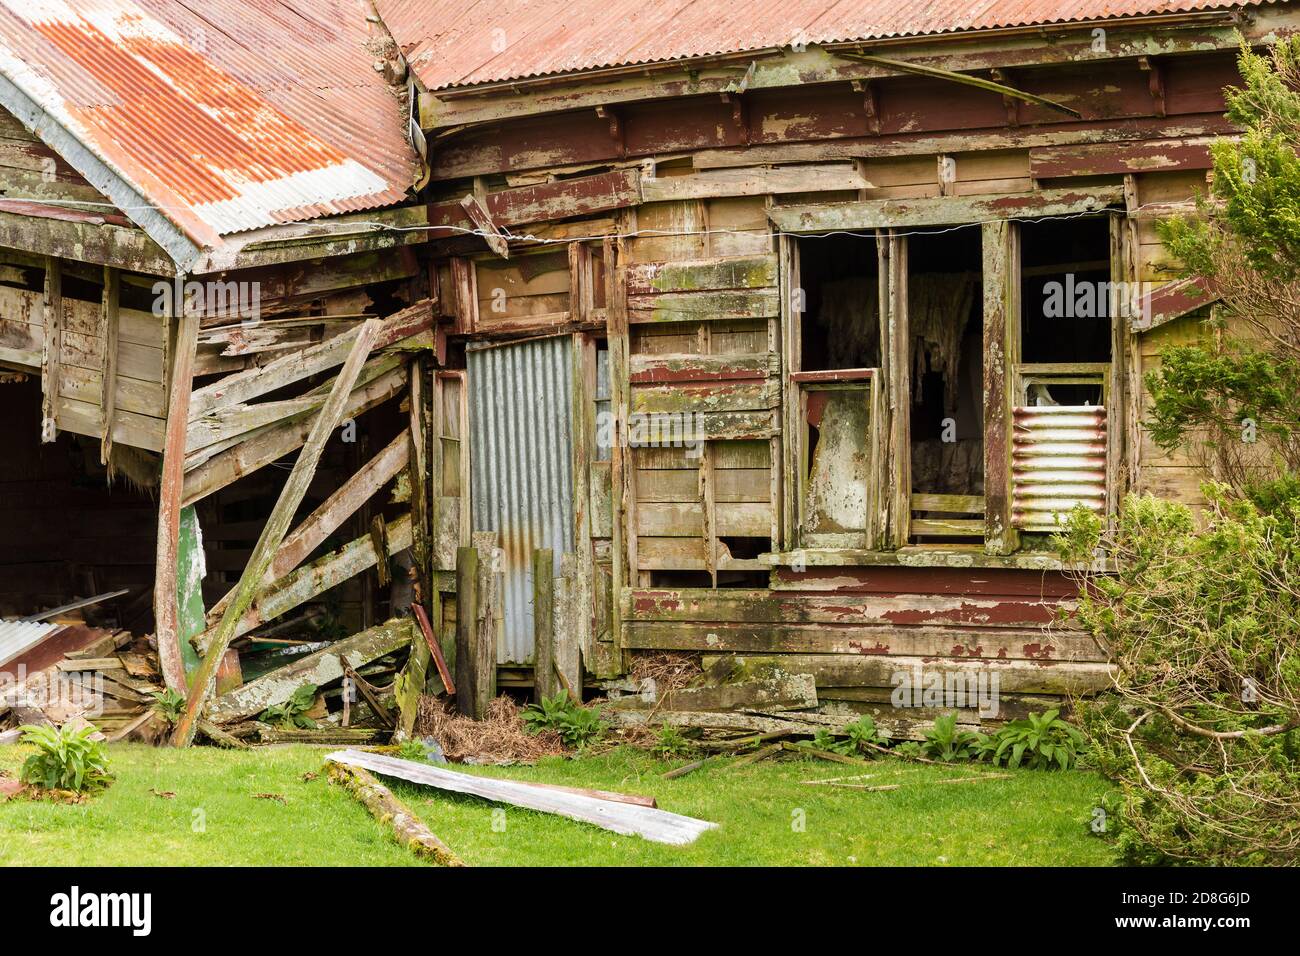 Una casa colonica in legno e ferro corrugato, abbandonata a lungo. Fotografato in Nuova Zelanda Foto Stock